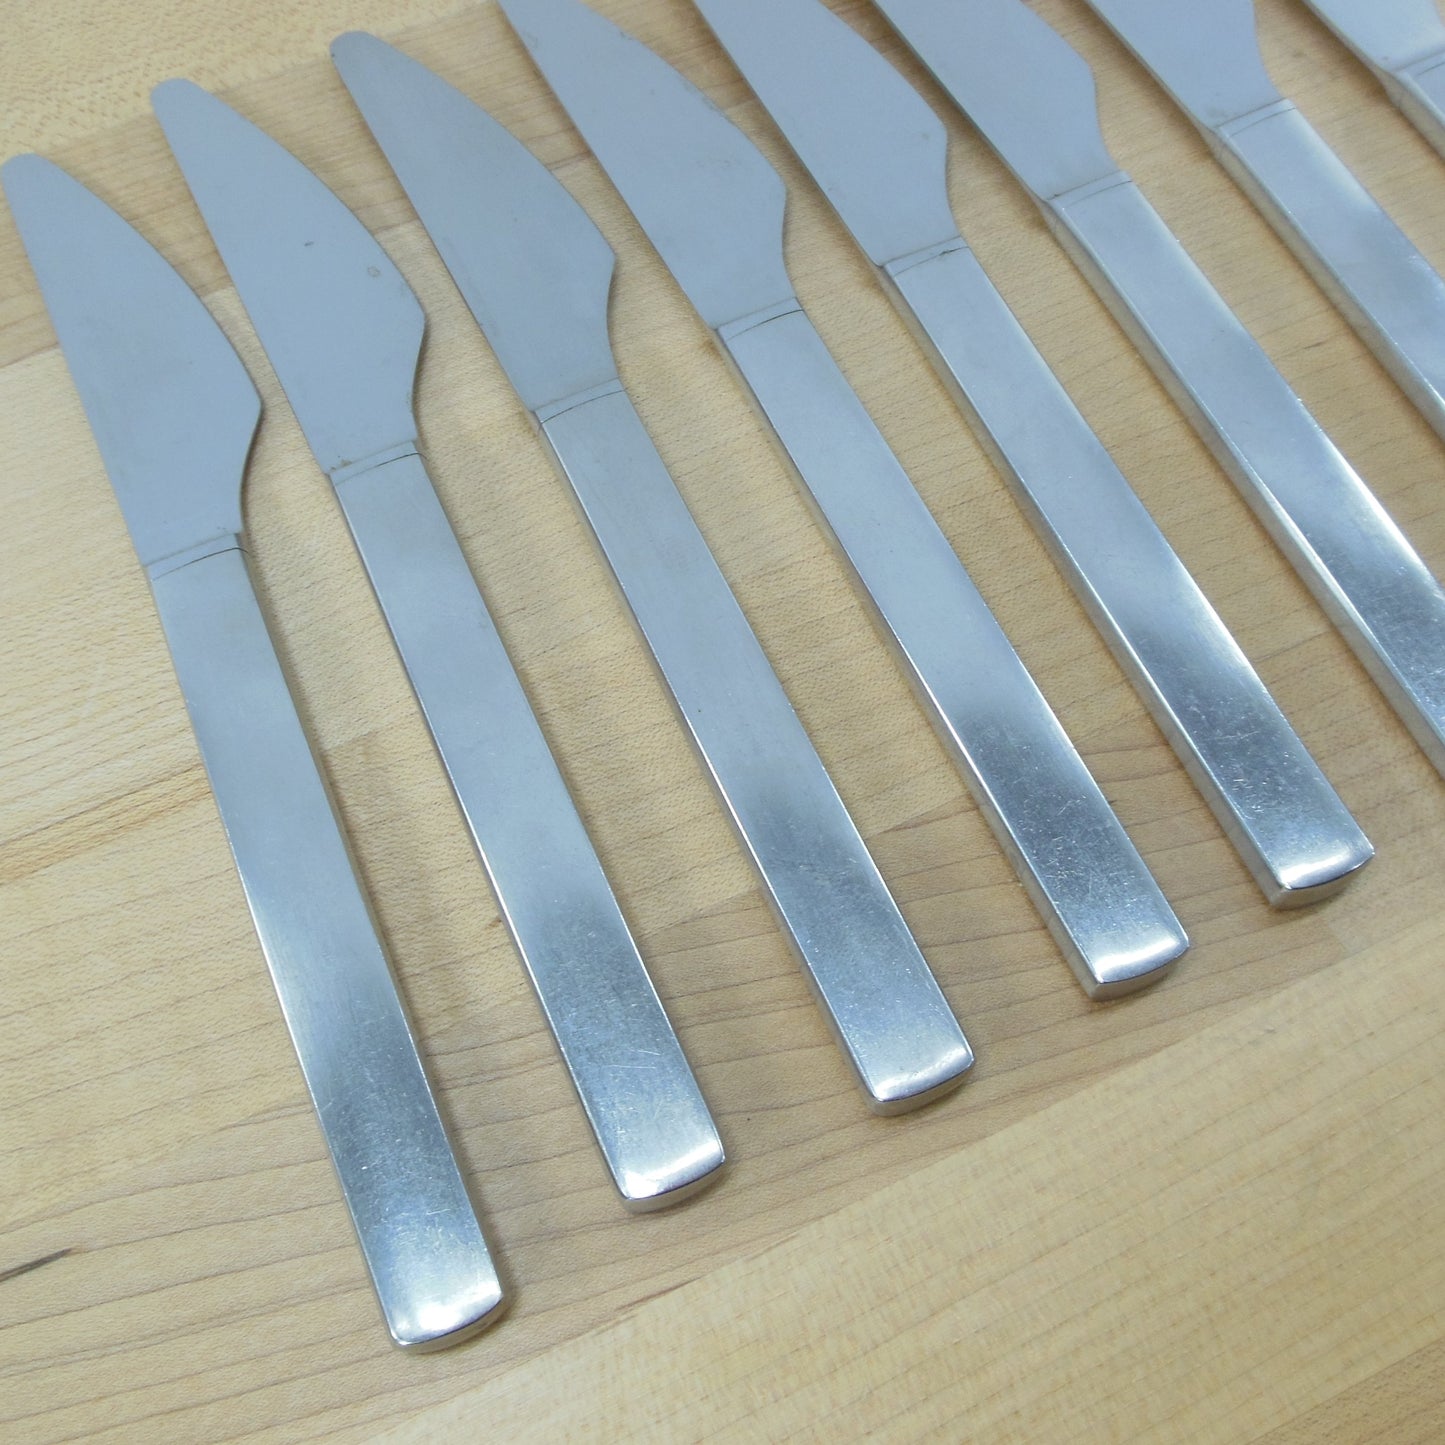 George Jensen Denmark Stainless New York Flatware - 8 Dinner Knives Used